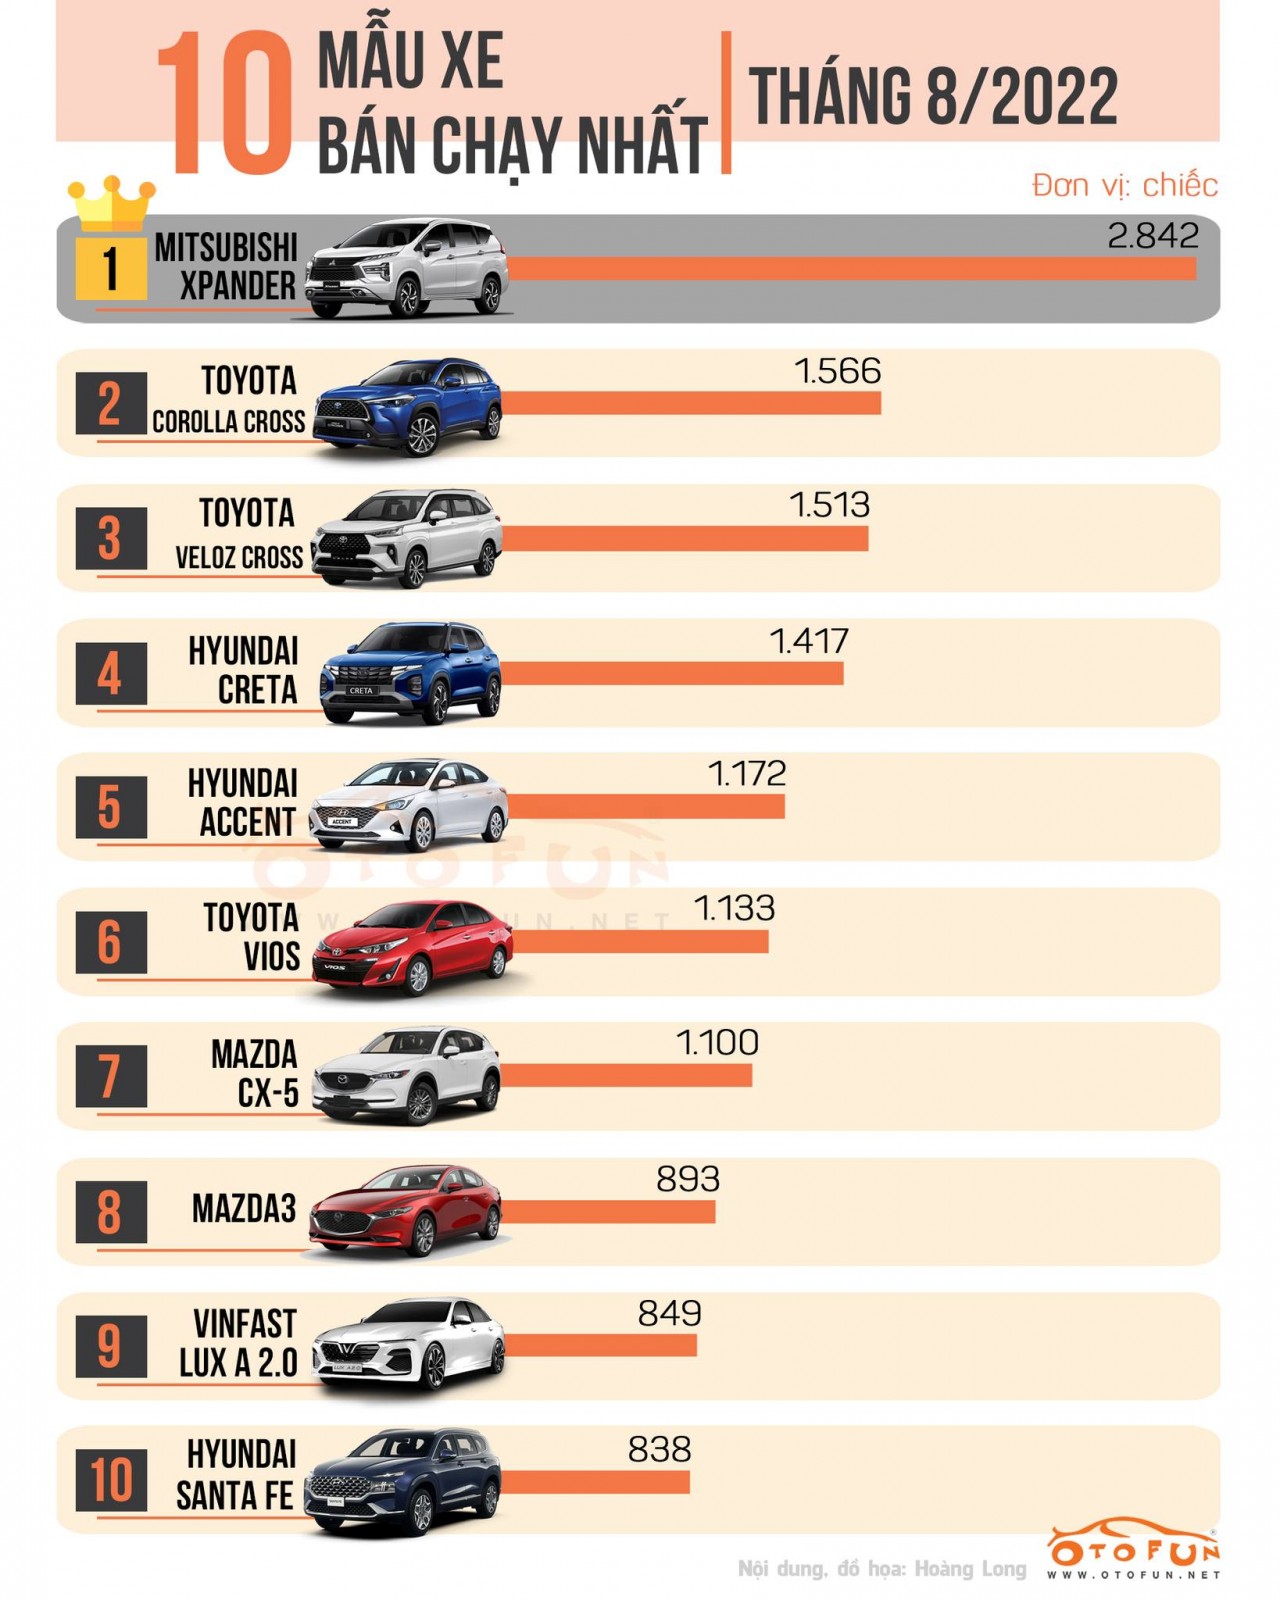 [Infographic] 10 xe bán chạy nhất tháng 8/2022